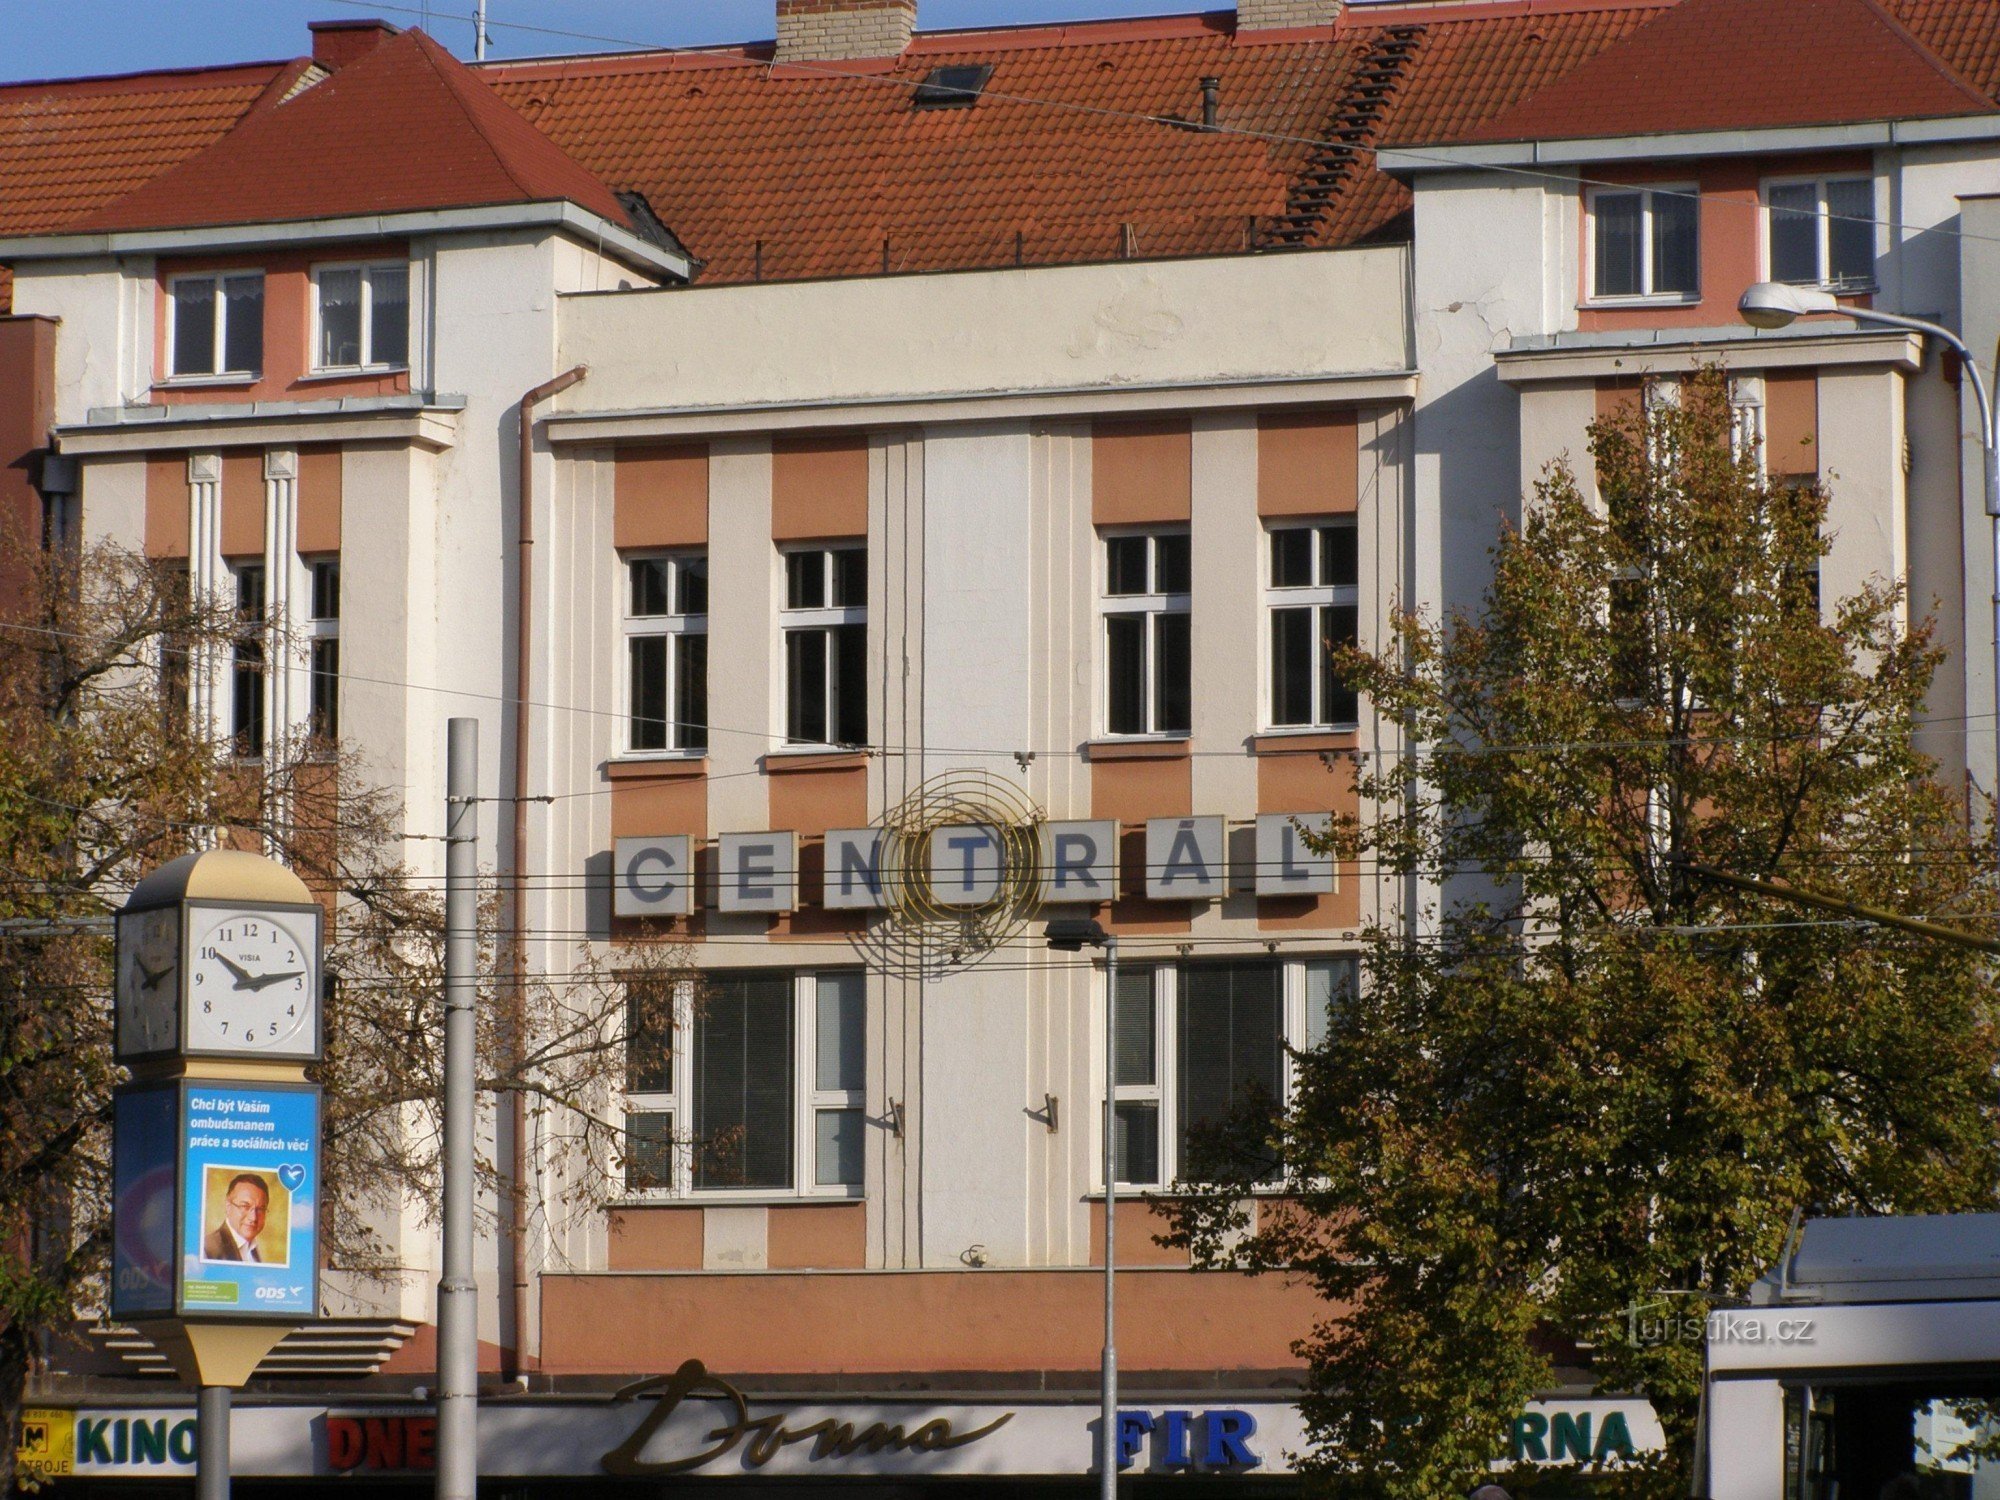 Hradec Králové - rạp chiếu phim Centrál